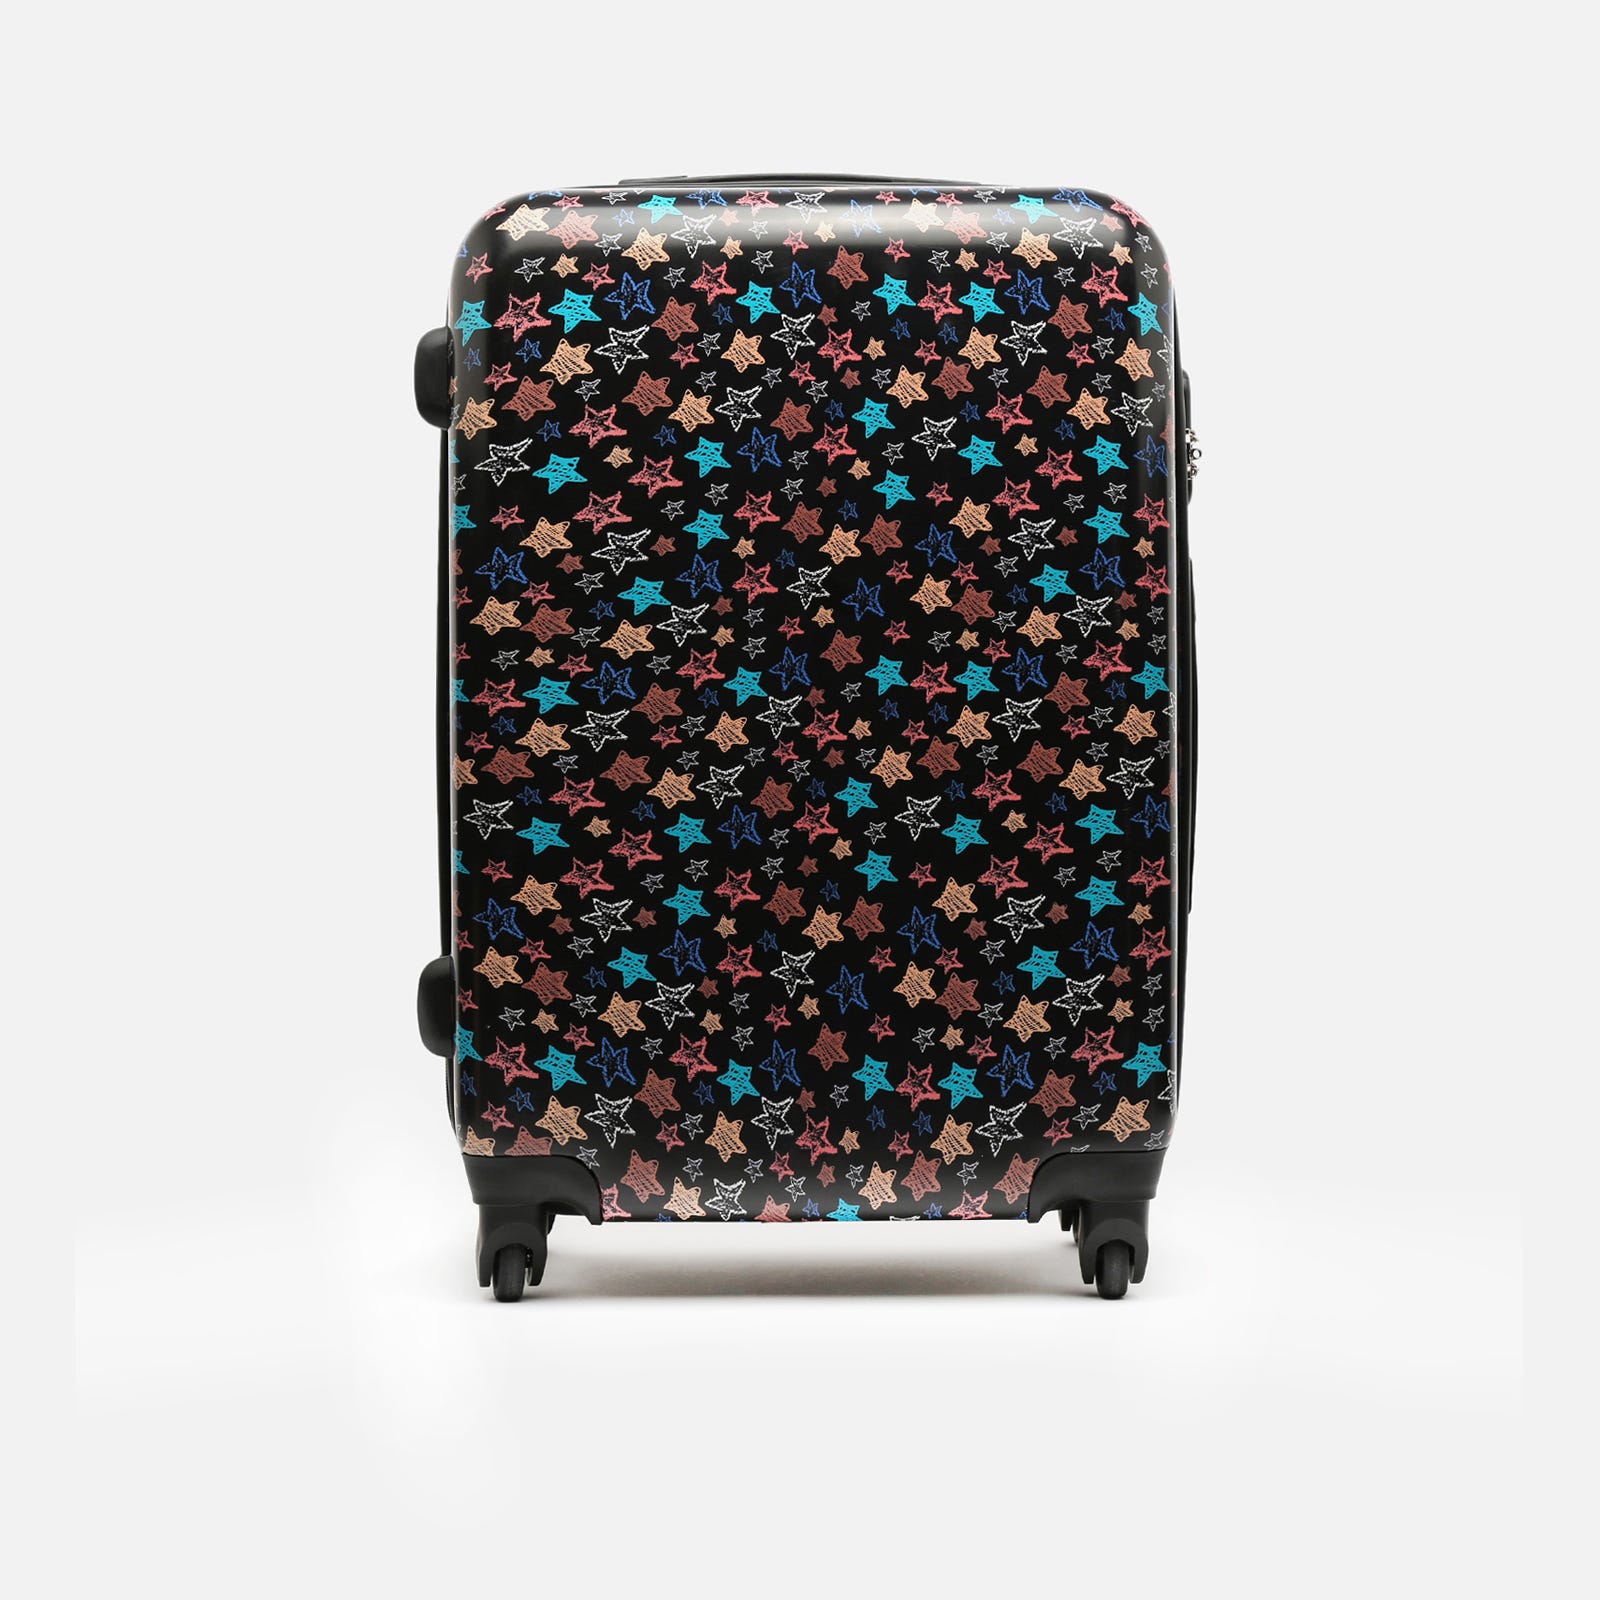 Estrella medium rigid suitcase with star print